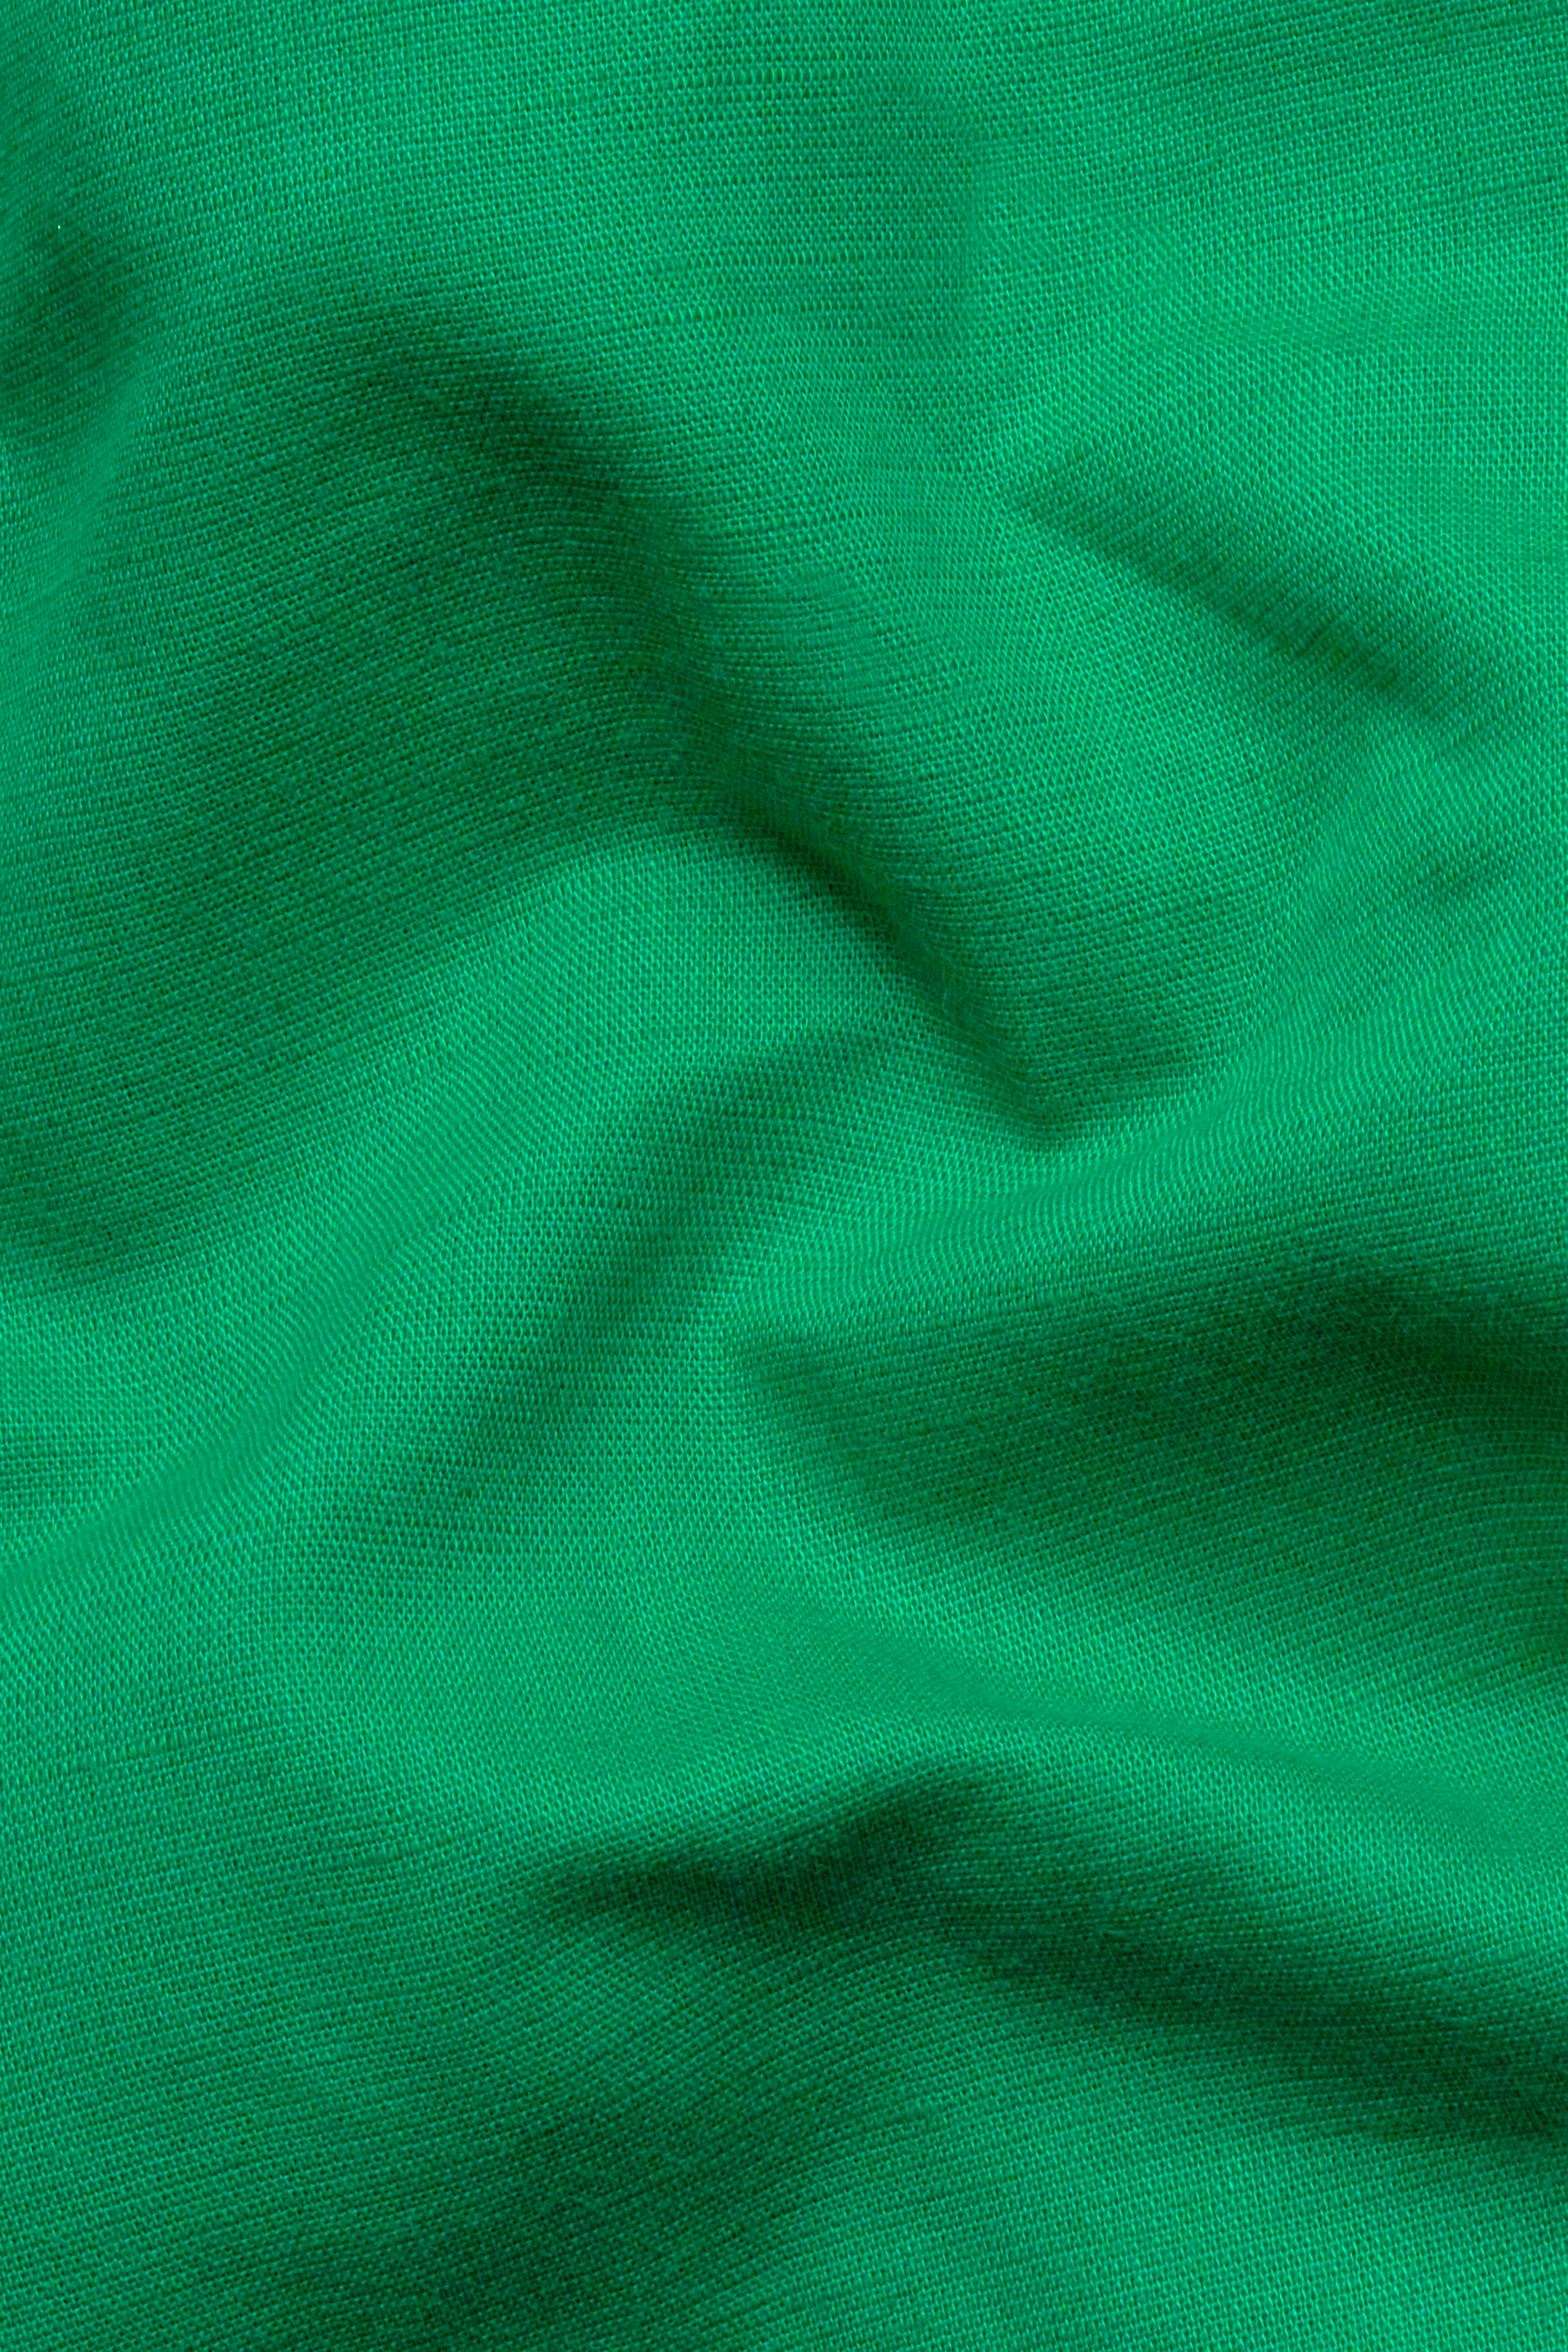 Shamrock Green Hand Painted Luxurious Linen Designer Shirt 6160-BD-BLK-ART-38, 6160-BD-BLK-ART-H-38, 6160-BD-BLK-ART-39, 6160-BD-BLK-ART-H-39, 6160-BD-BLK-ART-40, 6160-BD-BLK-ART-H-40, 6160-BD-BLK-ART-42, 6160-BD-BLK-ART-H-42, 6160-BD-BLK-ART-44, 6160-BD-BLK-ART-H-44, 6160-BD-BLK-ART-46, 6160-BD-BLK-ART-H-46, 6160-BD-BLK-ART-48, 6160-BD-BLK-ART-H-48, 6160-BD-BLK-ART-50, 6160-BD-BLK-ART-H-50, 6160-BD-BLK-ART-52, 6160-BD-BLK-ART-H-52